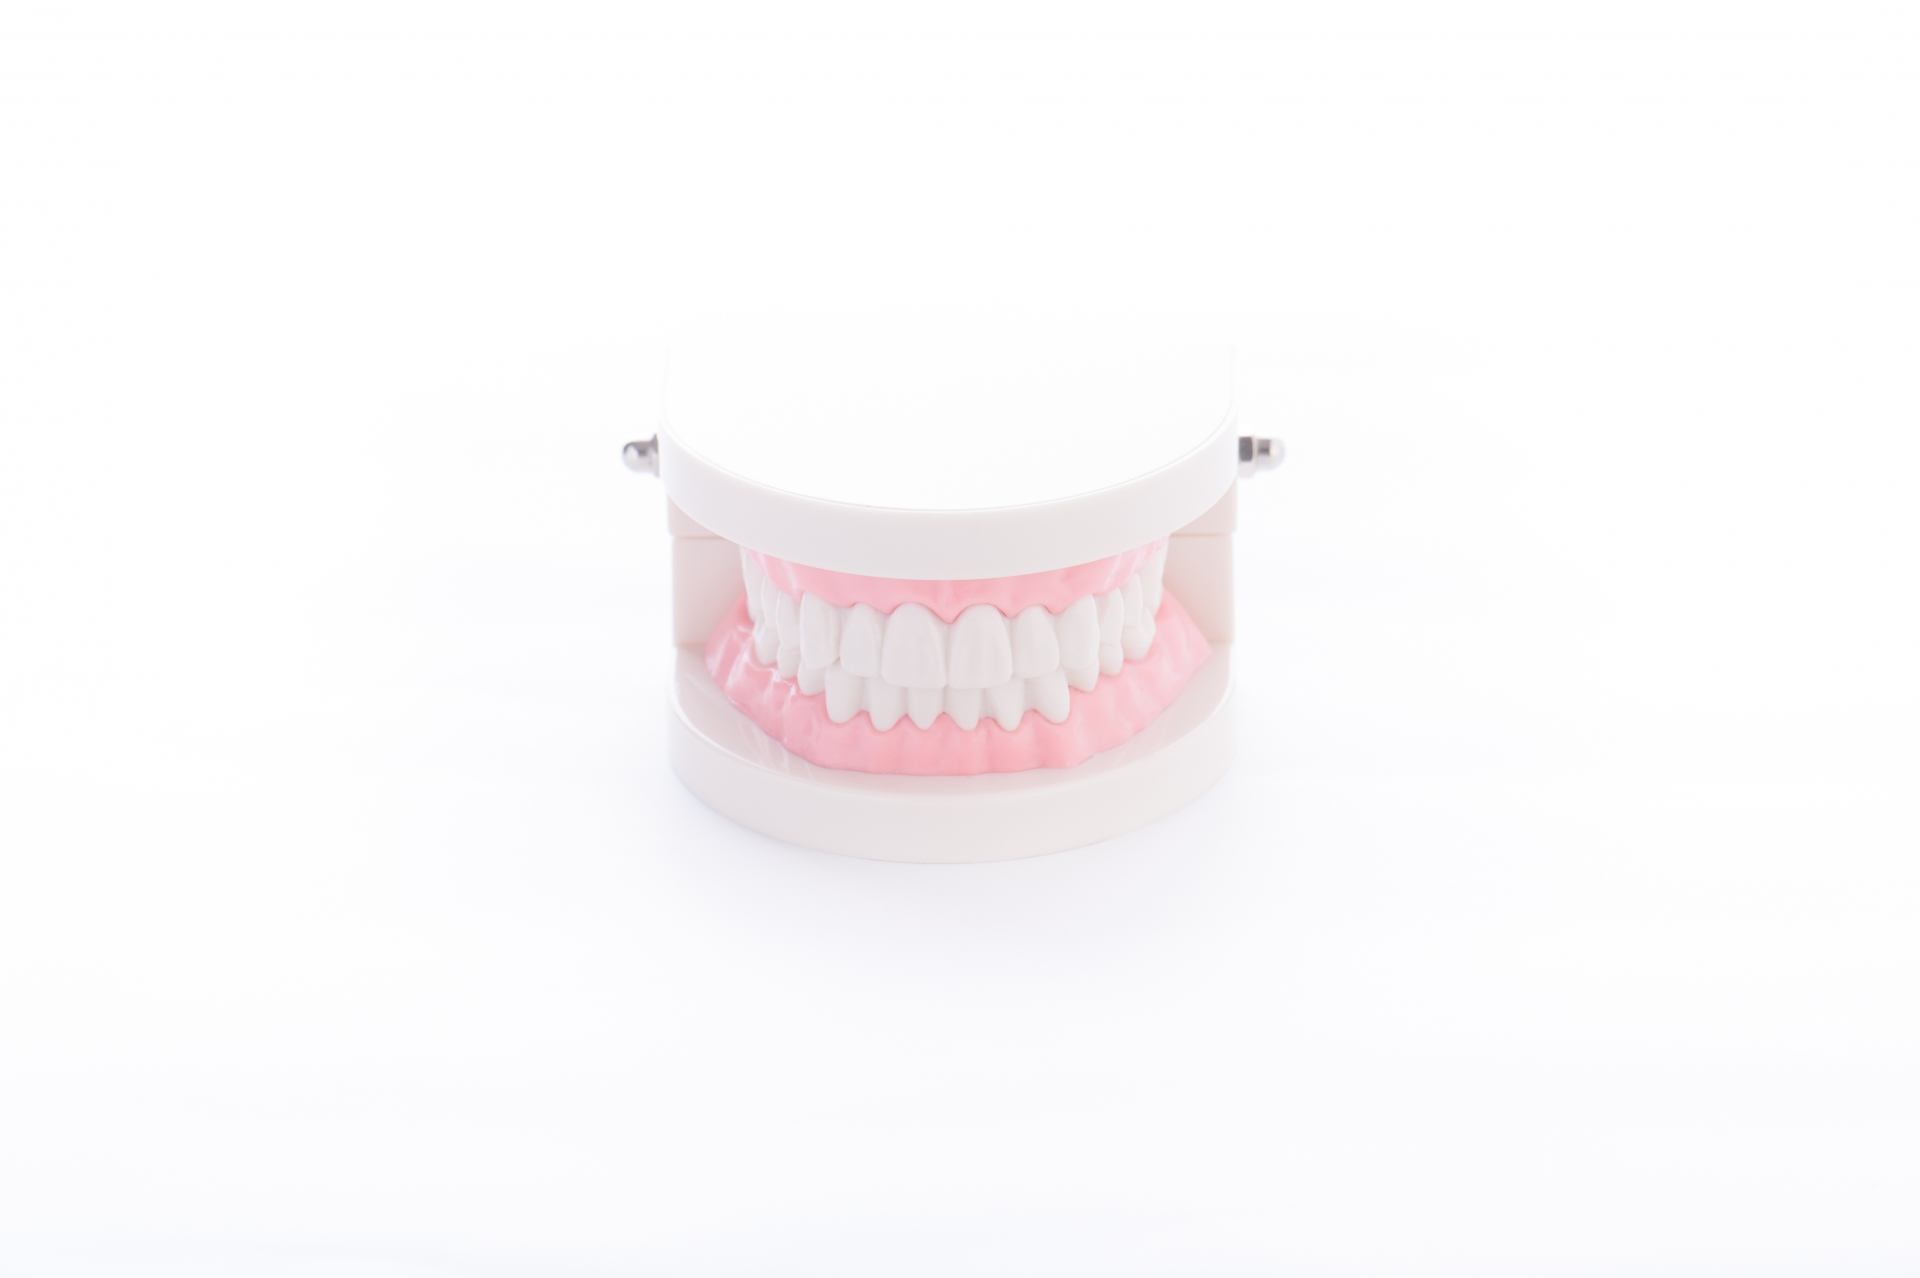 入れ歯のメインテナンスの重要性挿入イメージ